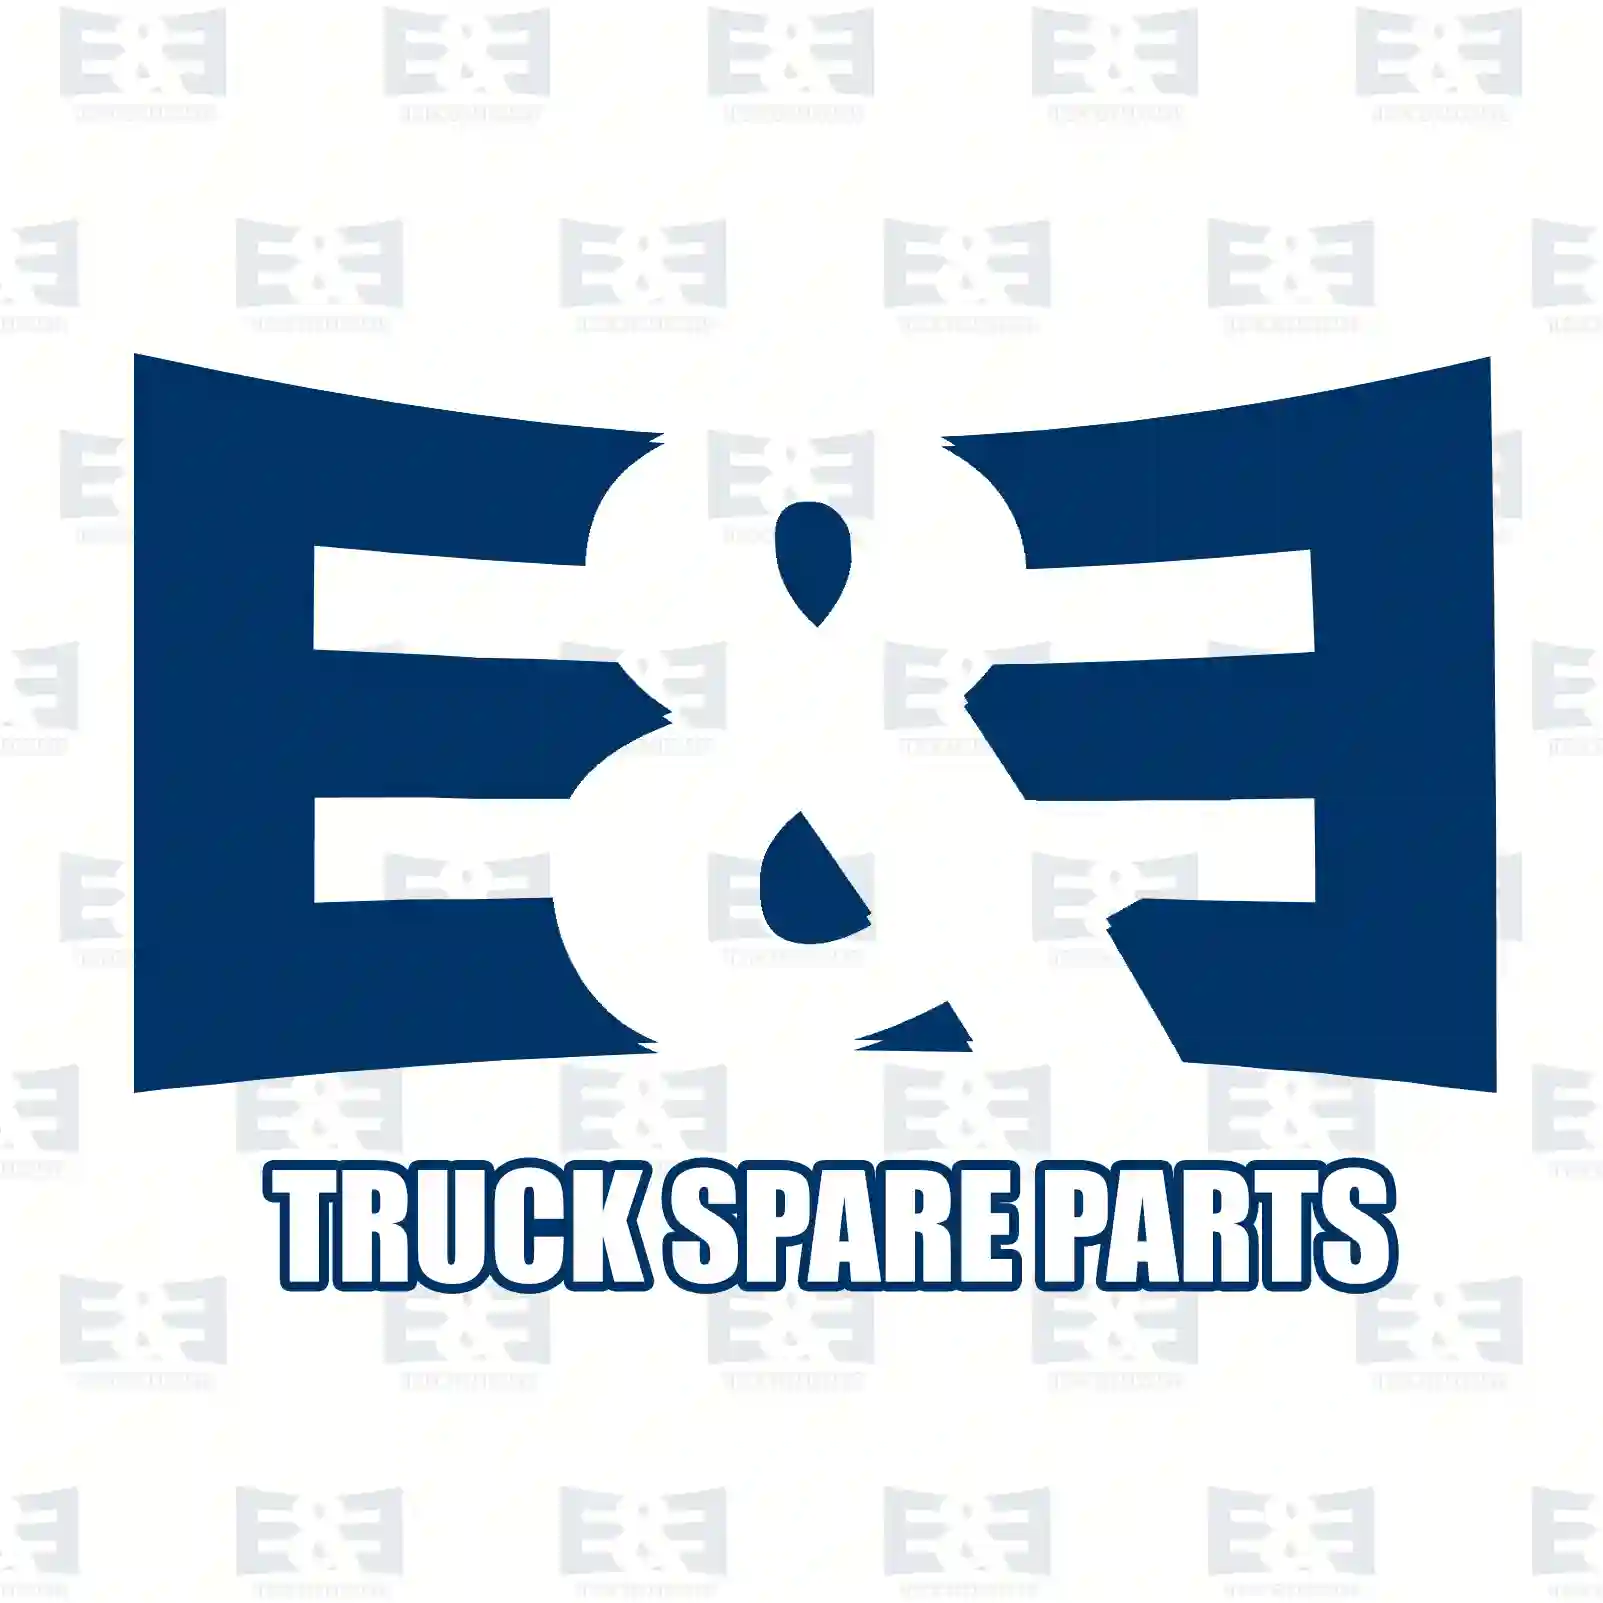 Propeller shaft, 2E2276713, 504007324 ||  2E2276713 E&E Truck Spare Parts | Truck Spare Parts, Auotomotive Spare Parts Propeller shaft, 2E2276713, 504007324 ||  2E2276713 E&E Truck Spare Parts | Truck Spare Parts, Auotomotive Spare Parts